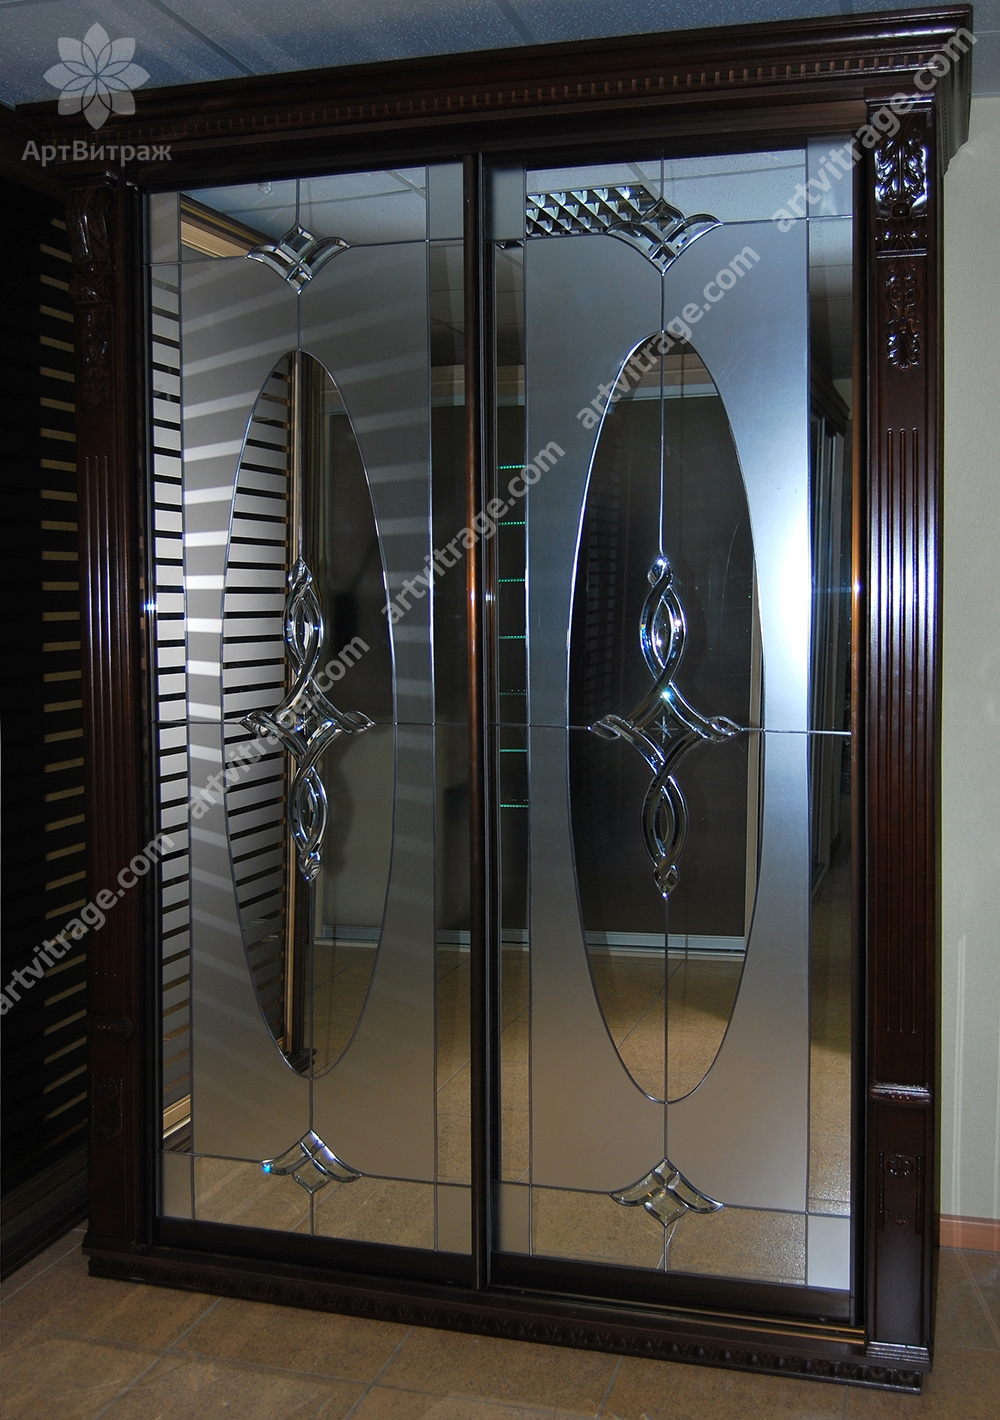 Зеркальный шкаф-купе выполненный в двух техниках с использованием пескоструйной обработки